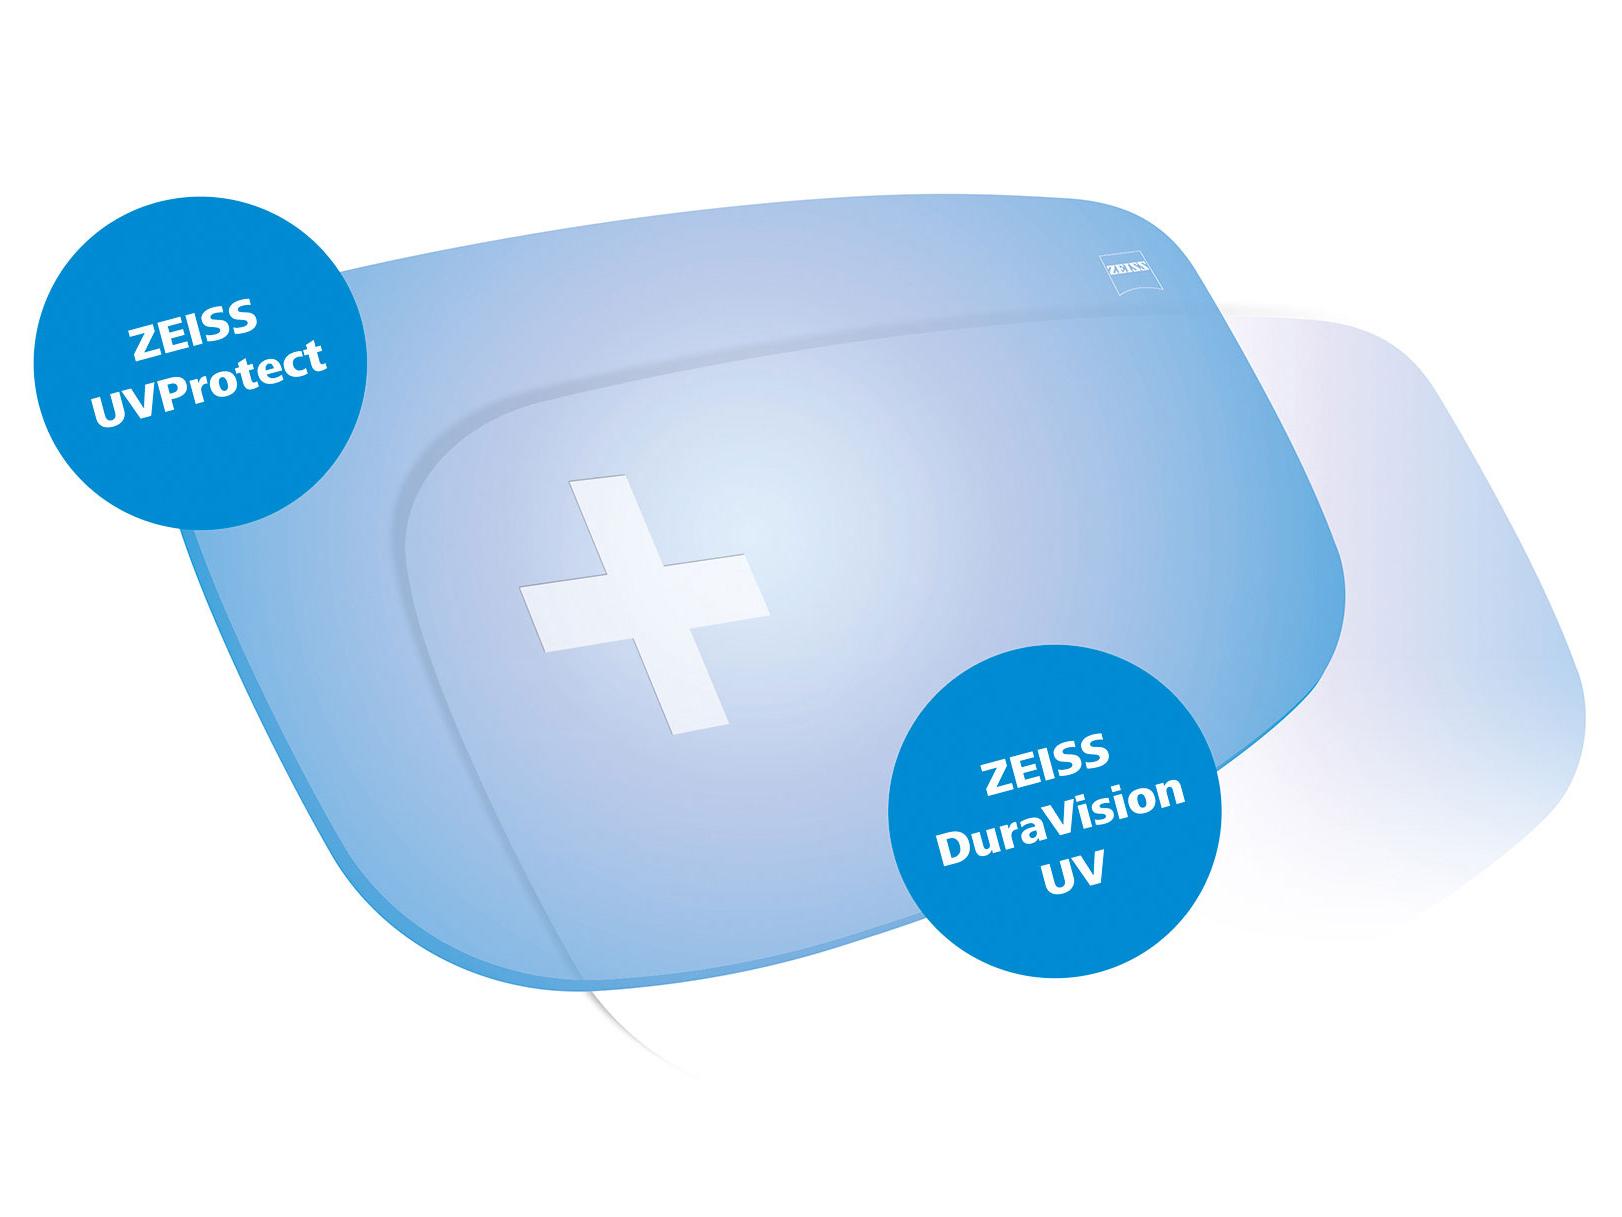 Стандартом для всіх лінз ZEISS є наявність захисту від ультрафіолетового випромінювання з усіх сторін. На графіку представлено два рішення.